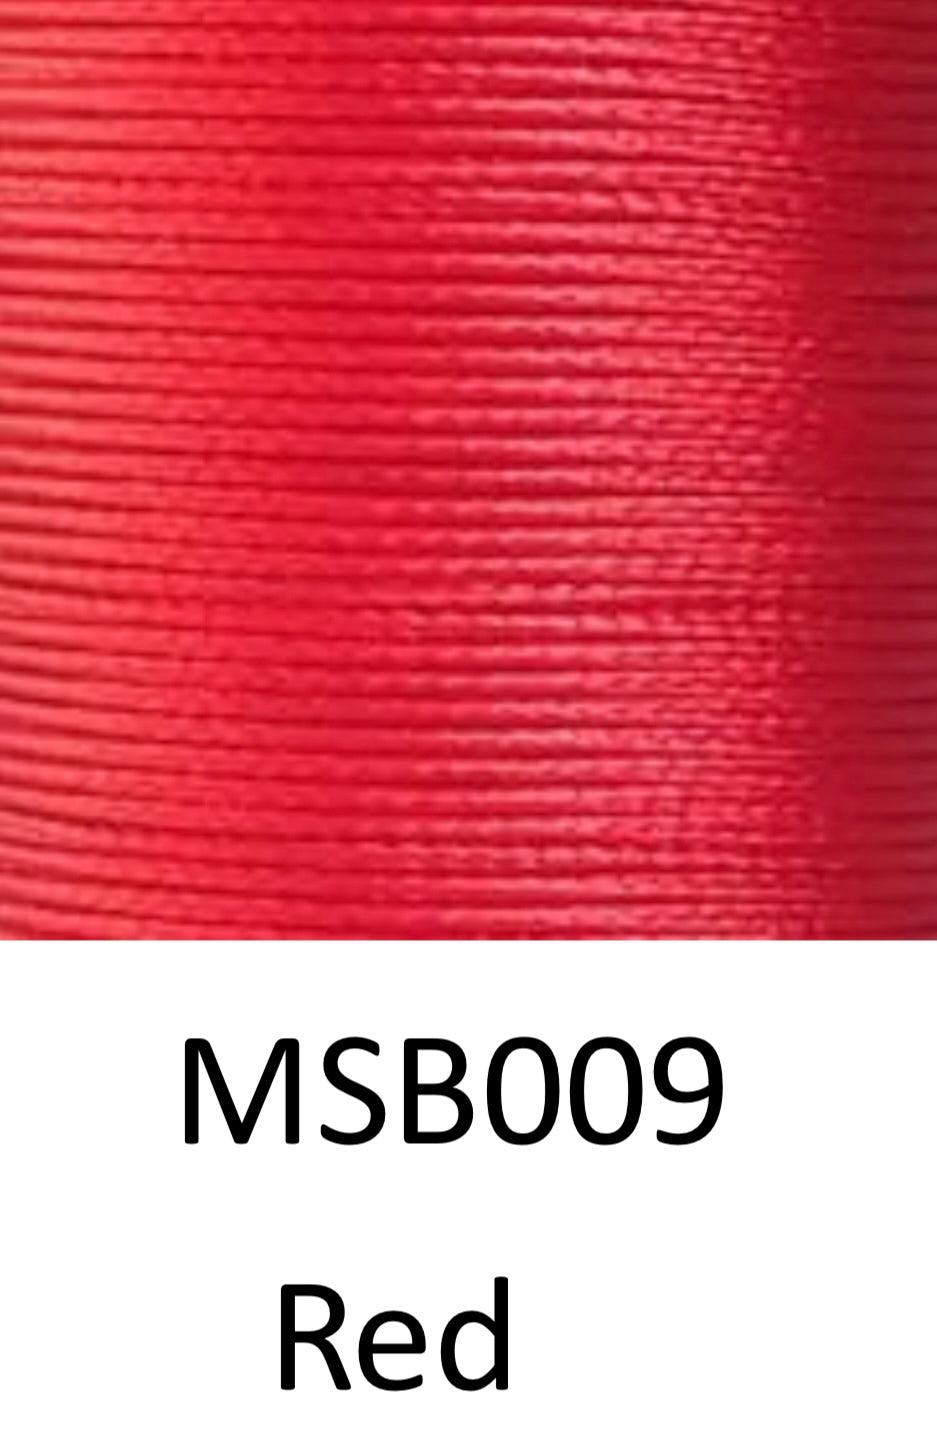 Garn de poliéster trenzado Xiange | M50 0,55mm | Bobinas de 50m